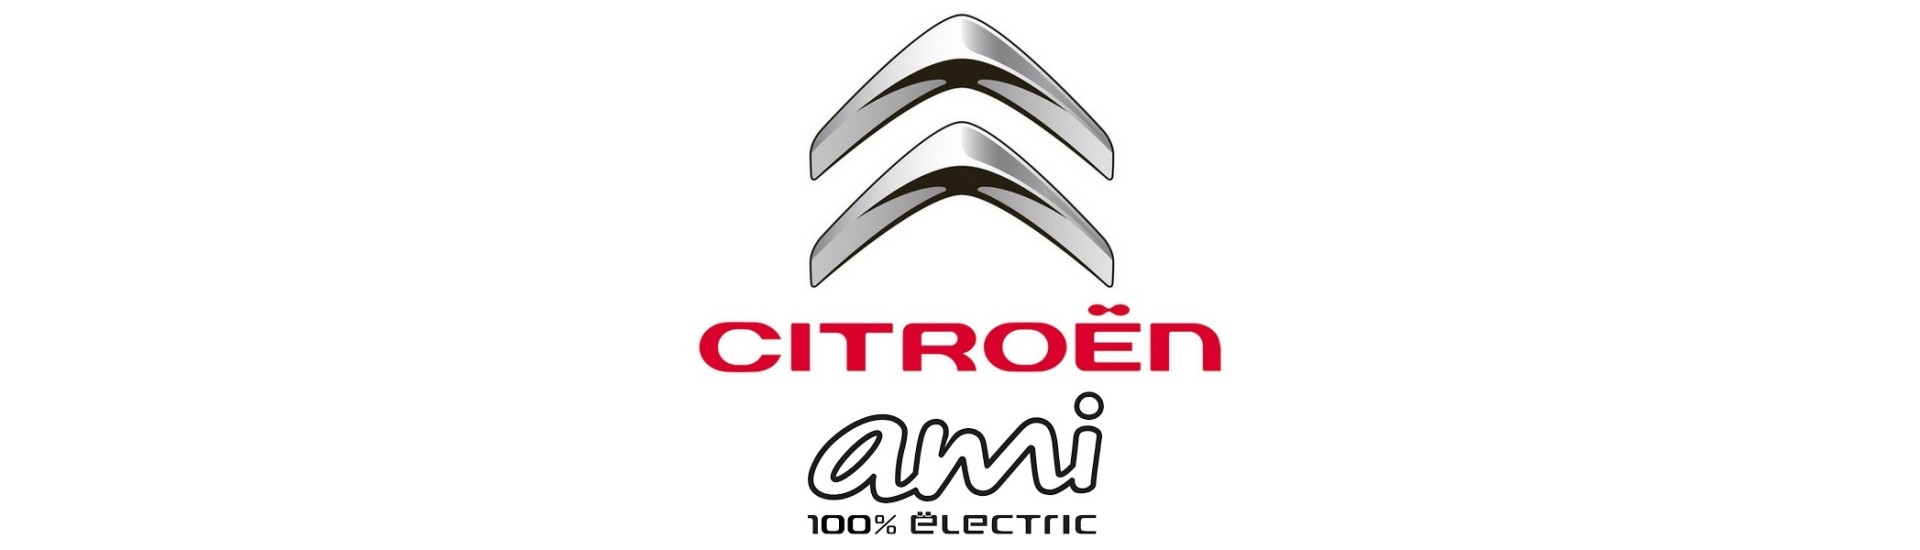 Kläderdörrlås till bästa prisbil utan tillstånd Citroën